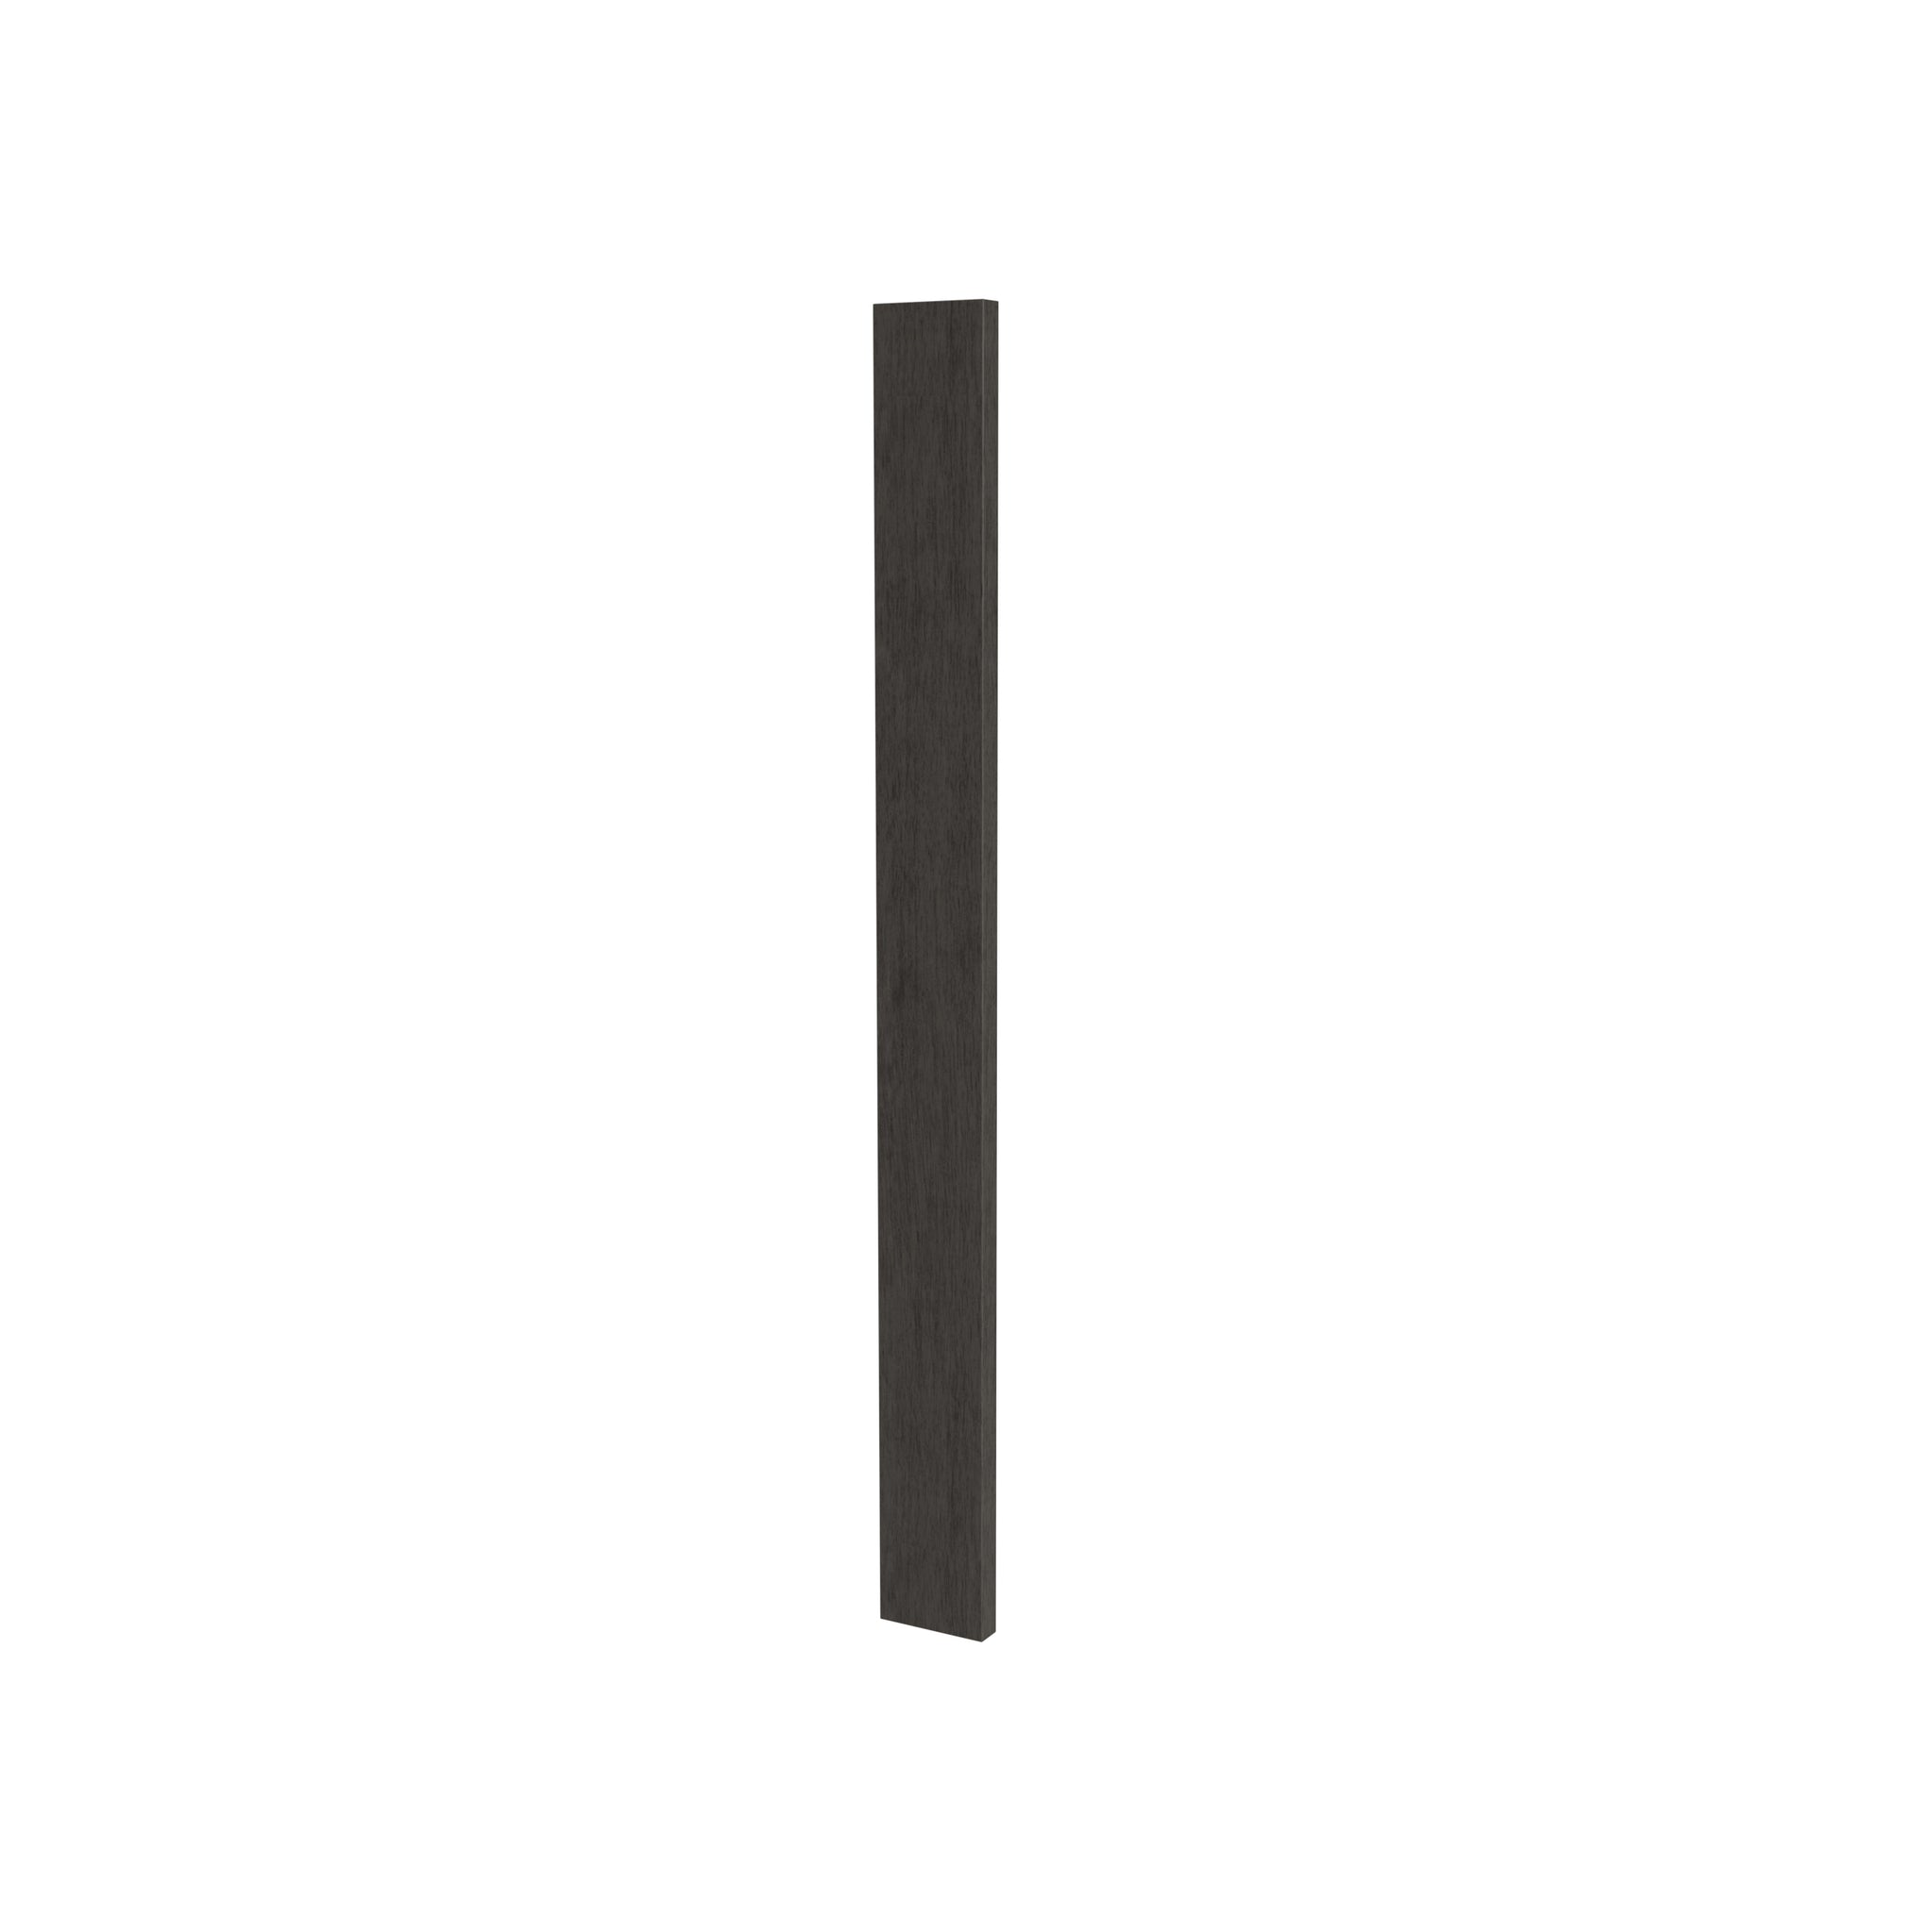 Luxor Smoky Grey - Wall Filler | 3"W x 42"H x 0.75"D